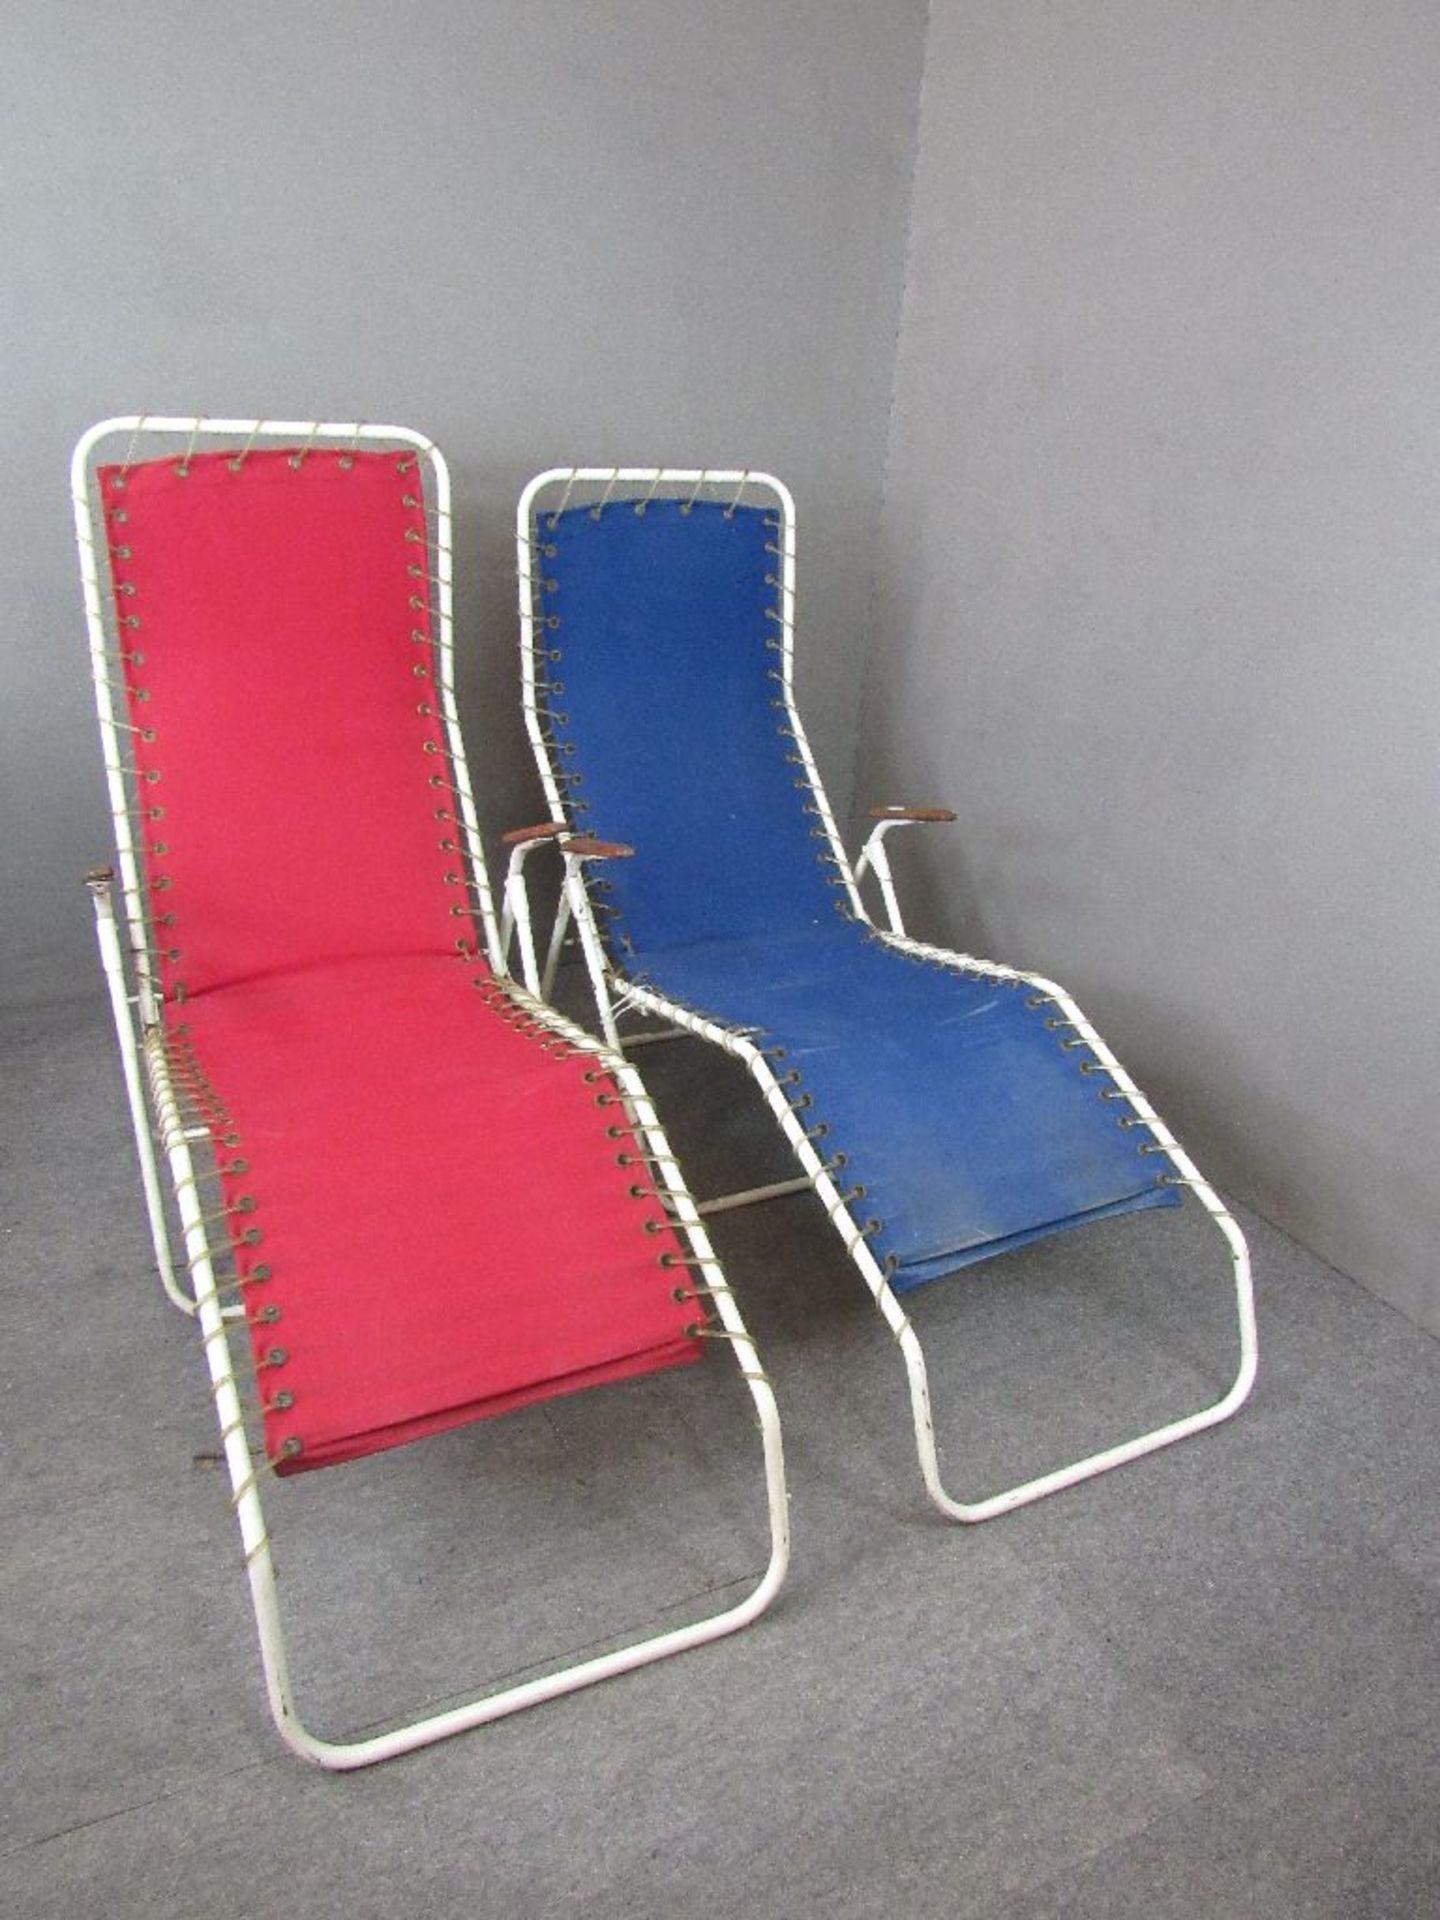 Zwei Vintage 60er Jahre Liegestühle Teak Armlehnen Made in Denmark Hersteller Homa 2 Stück blau